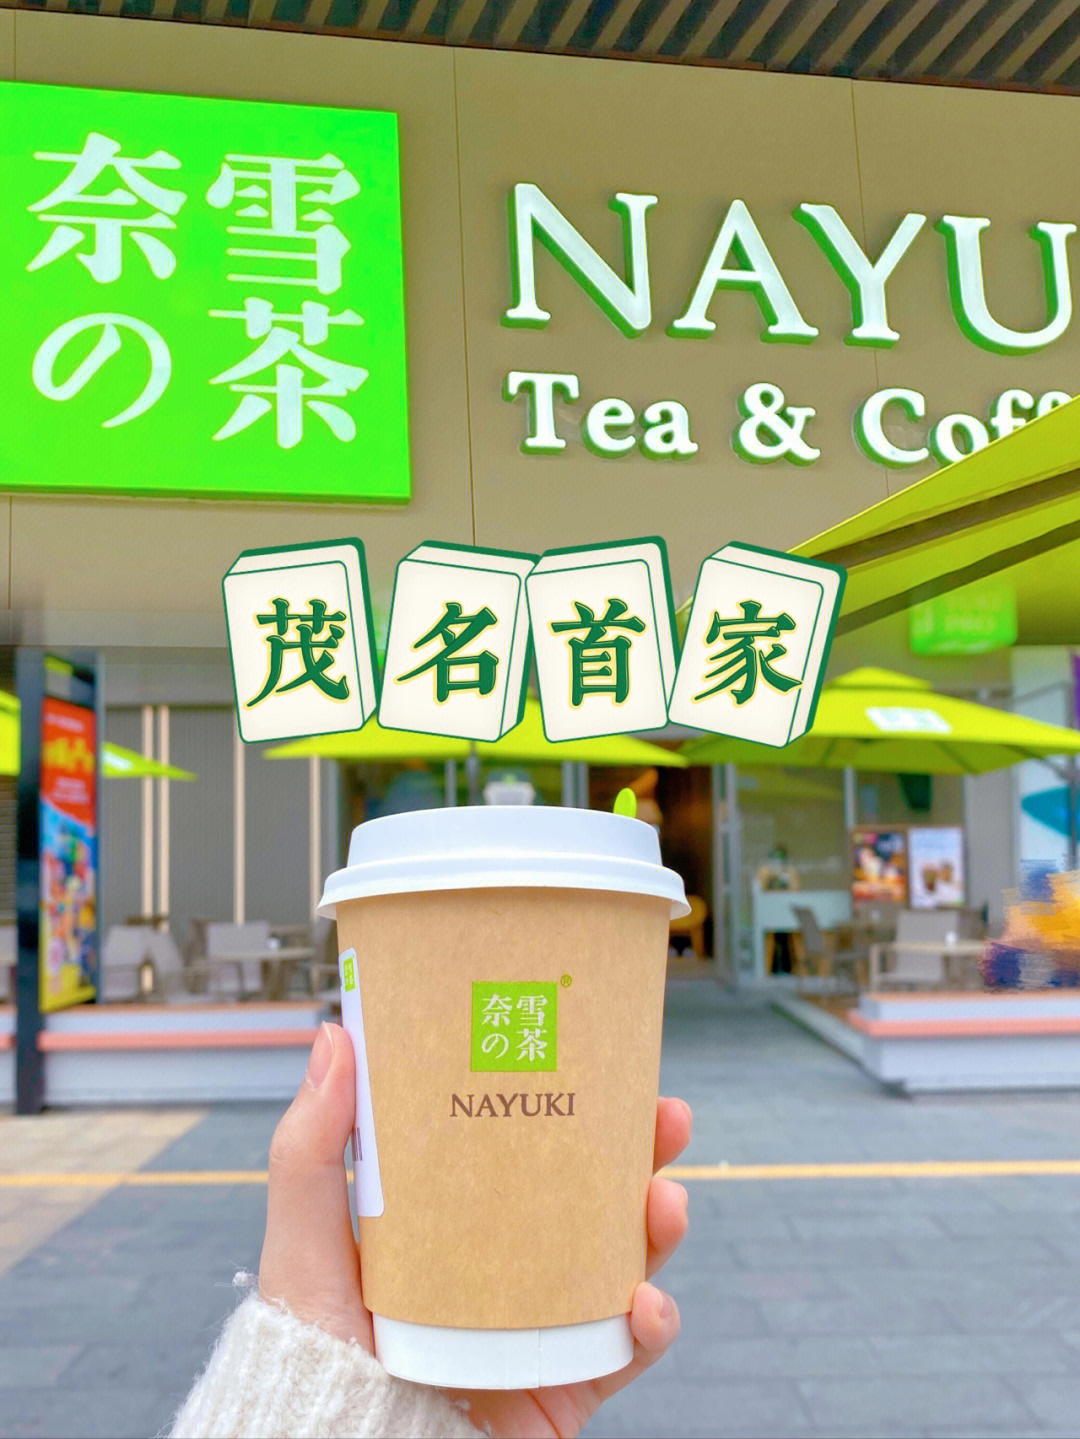 茂名威利国际酒店茶市图片